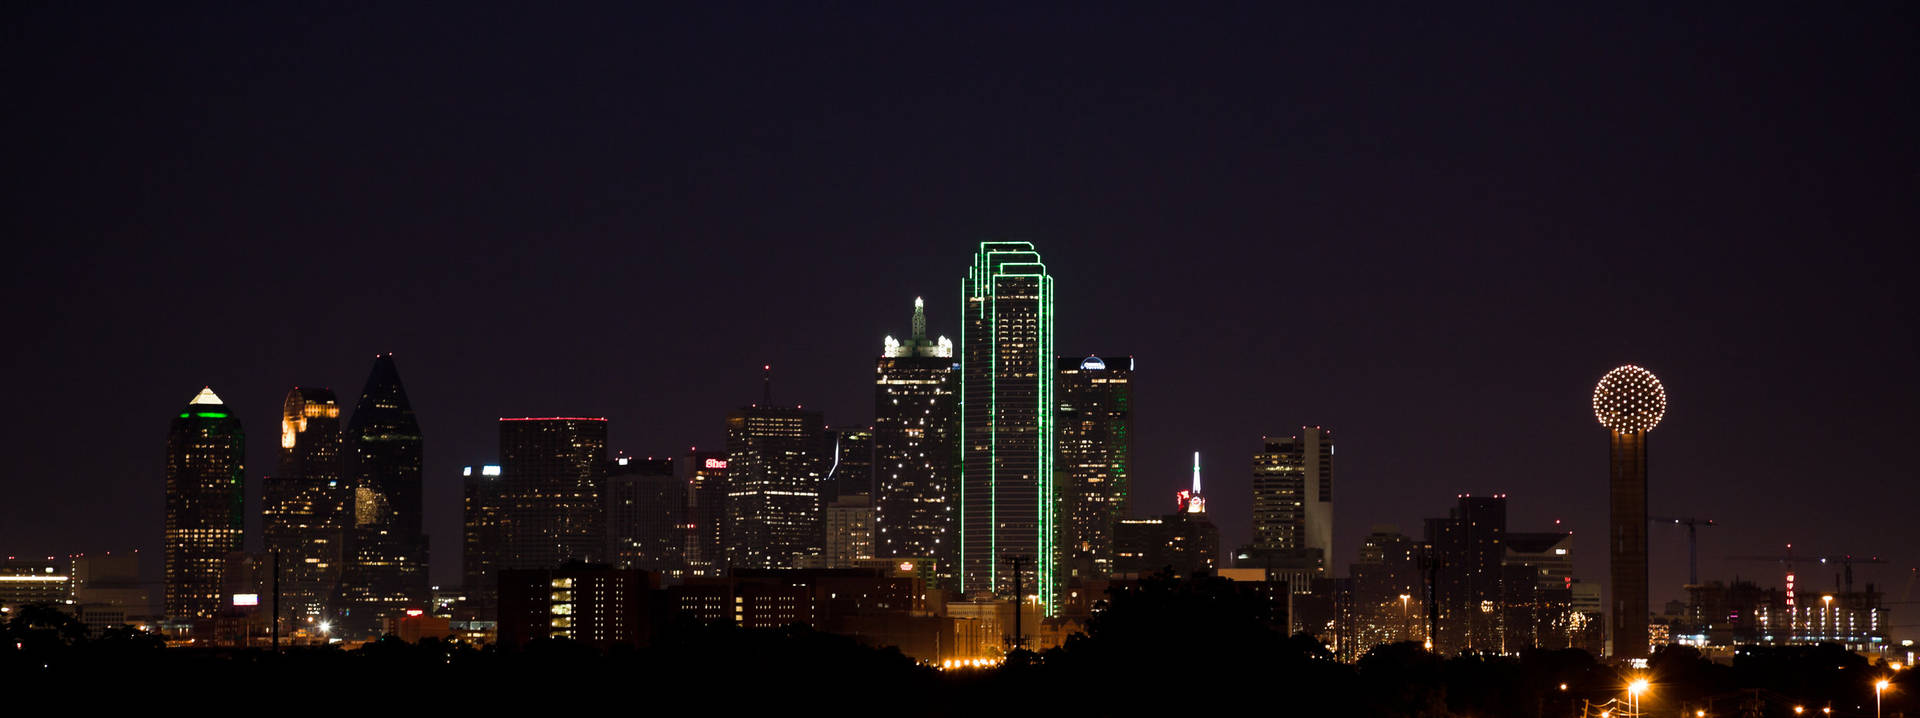 Dallas Skyline At Night Wallpaper